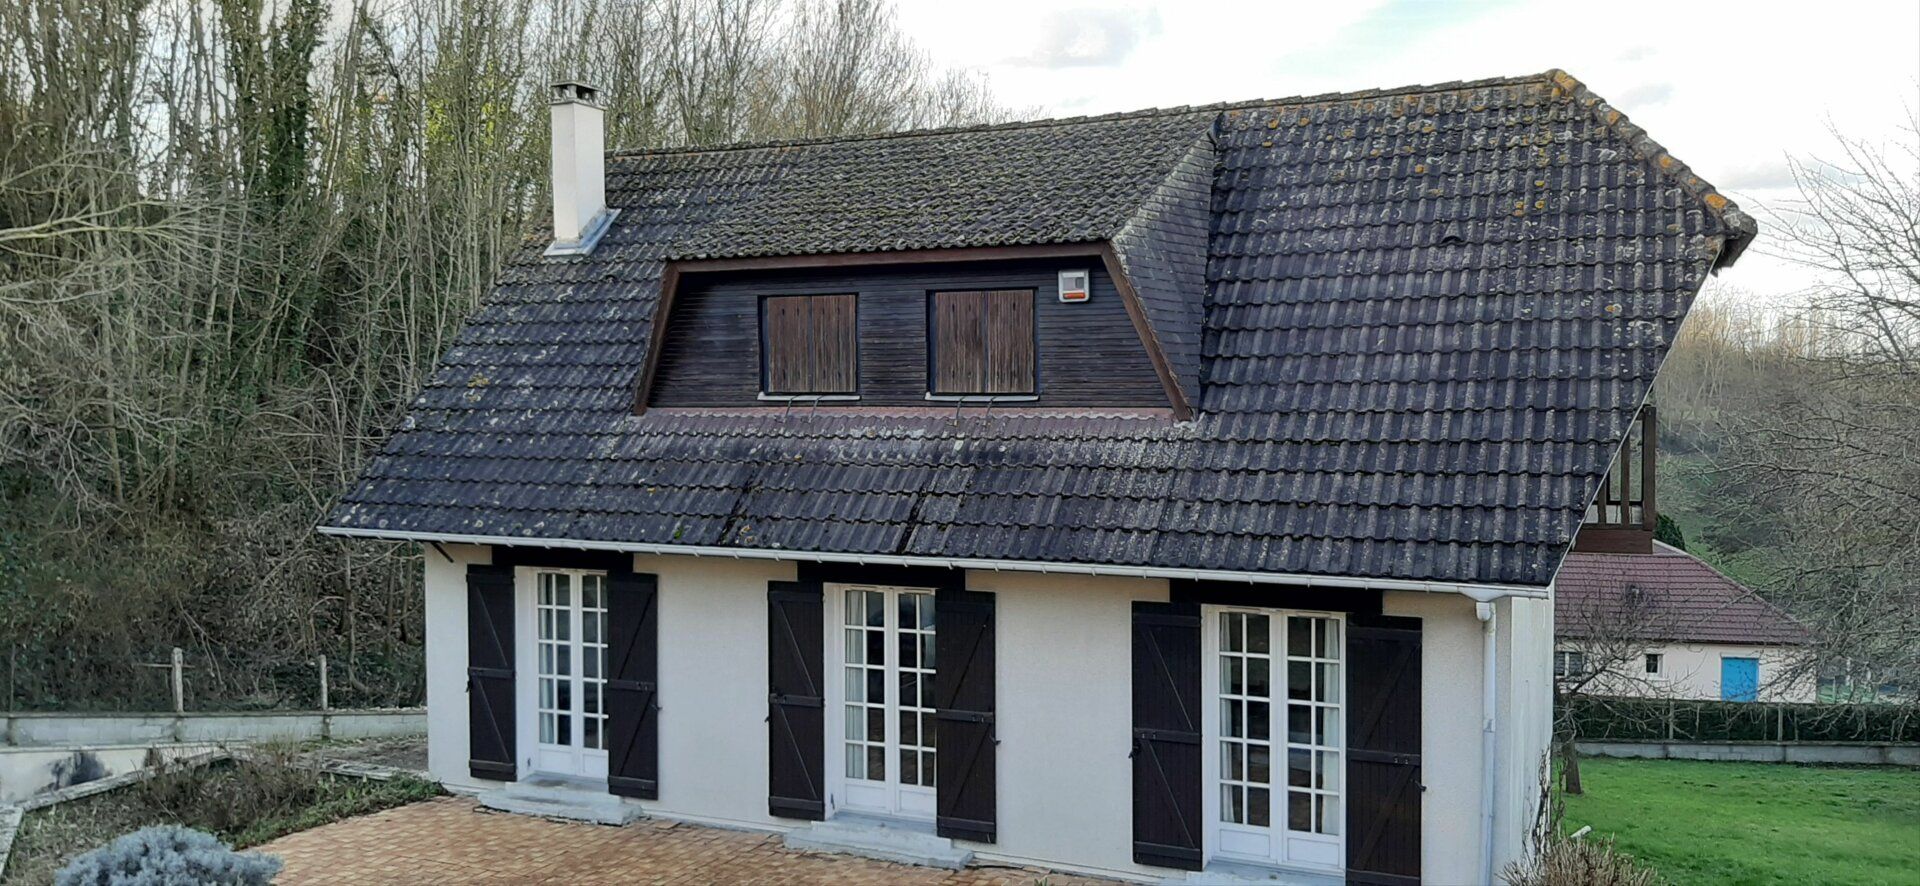 Maison à vendre 6 110m2 à Saint-Pierre-lès-Elbeuf vignette-3